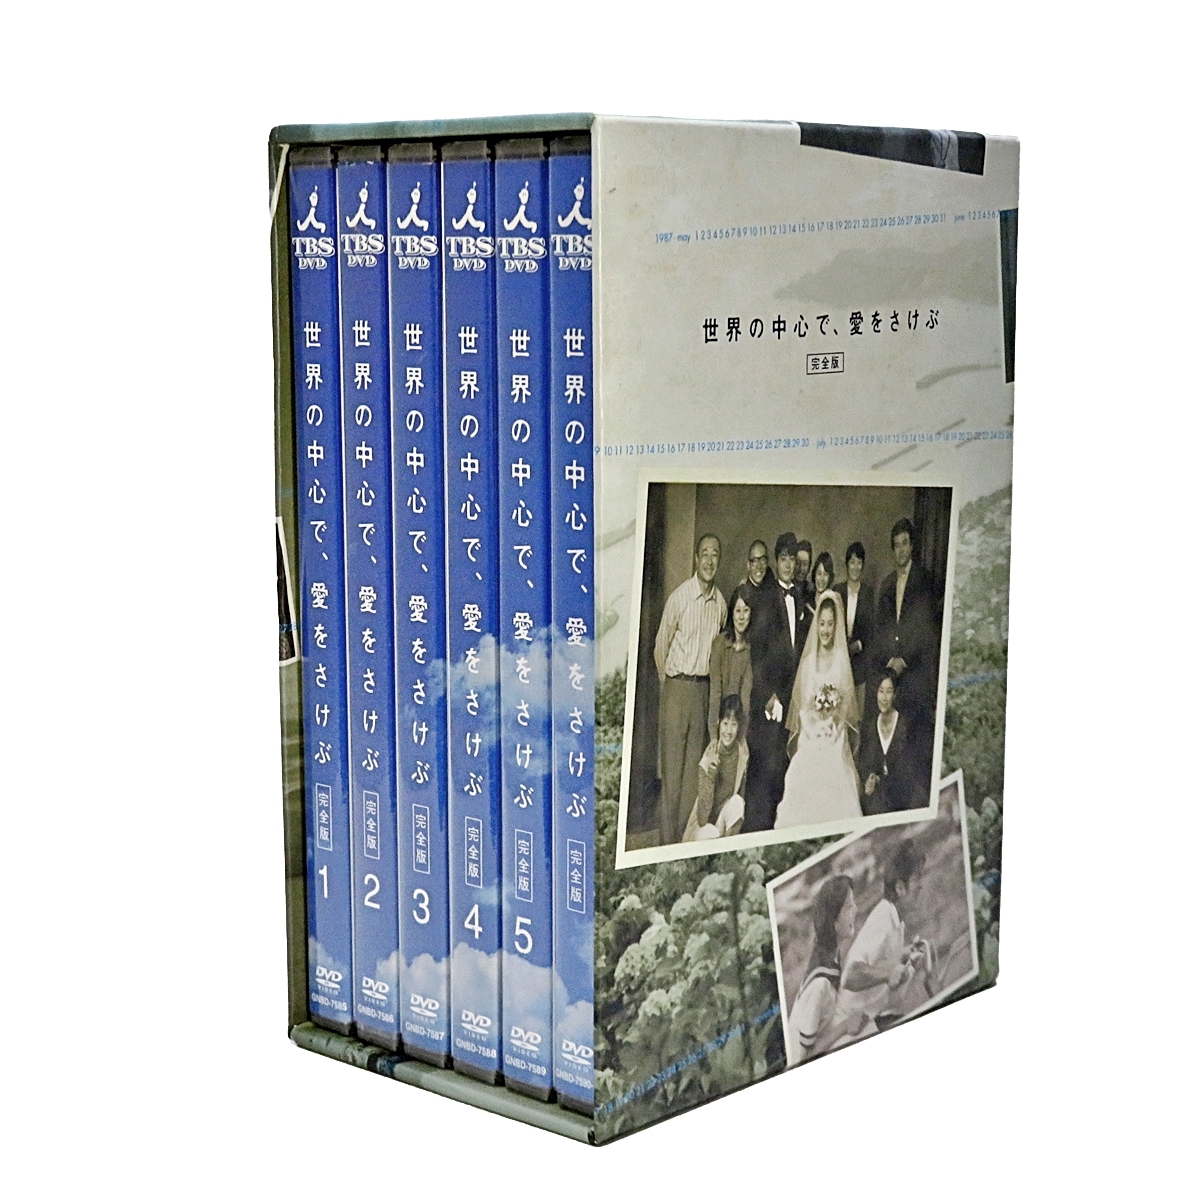 世界の中心で、愛をさけぶ 完全版 TBS DVD DVD-BOX 6枚組 山田孝之